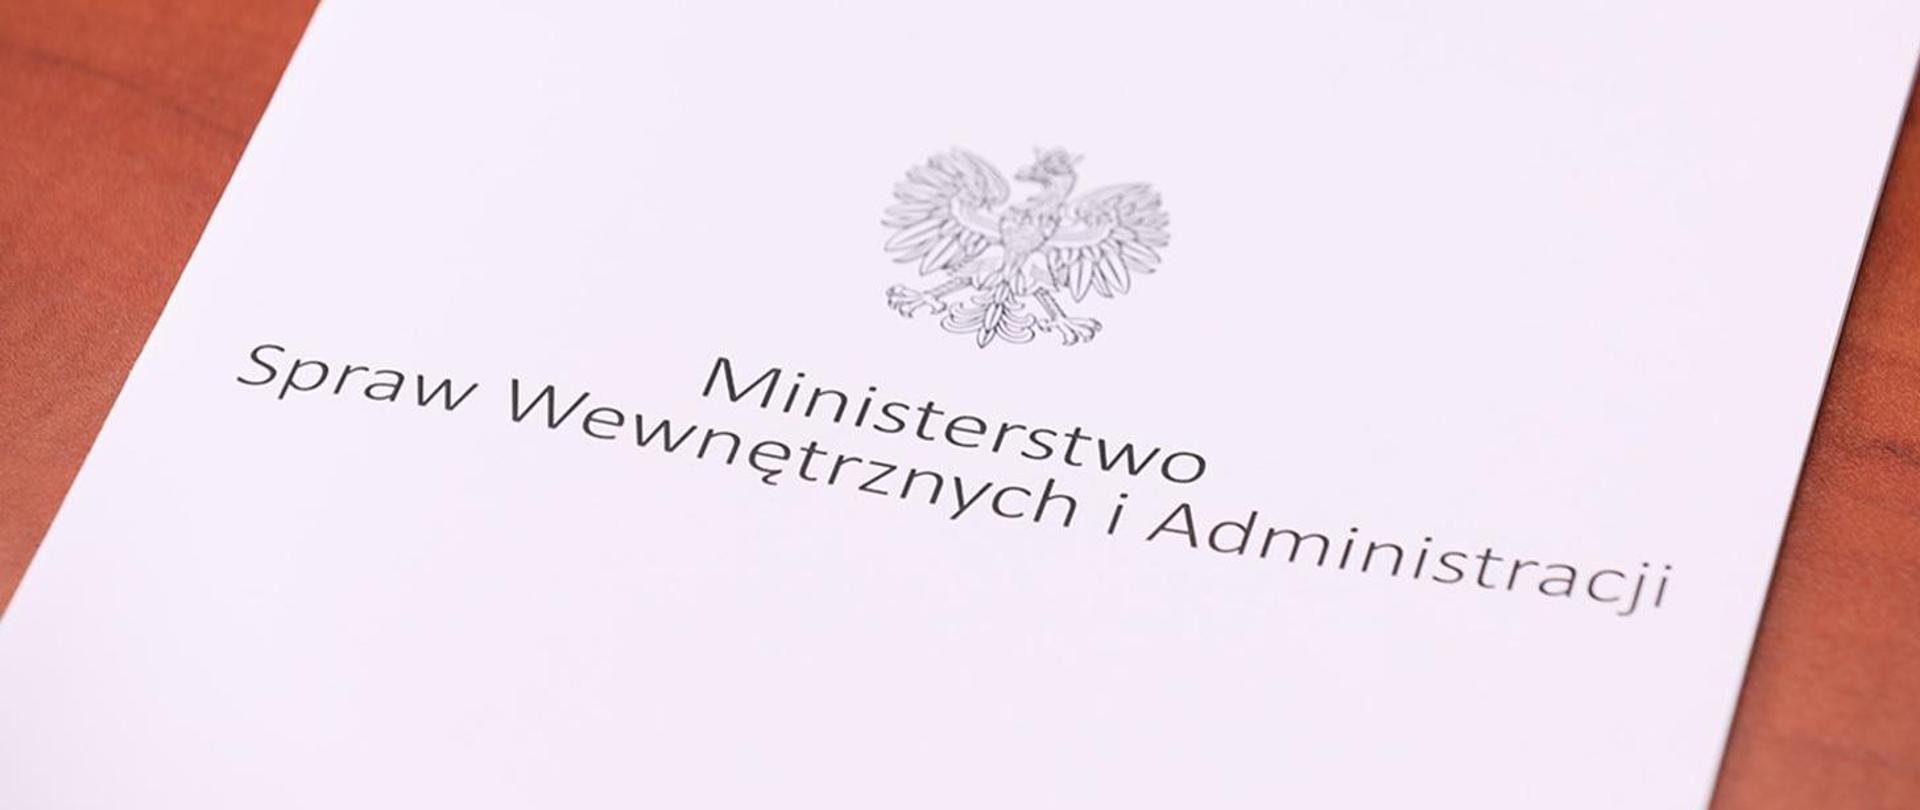 Zdjęcie przedstawia teczkę aktową logowaną Ministerstwem Spraw Wewnętrznych i Administracji. 